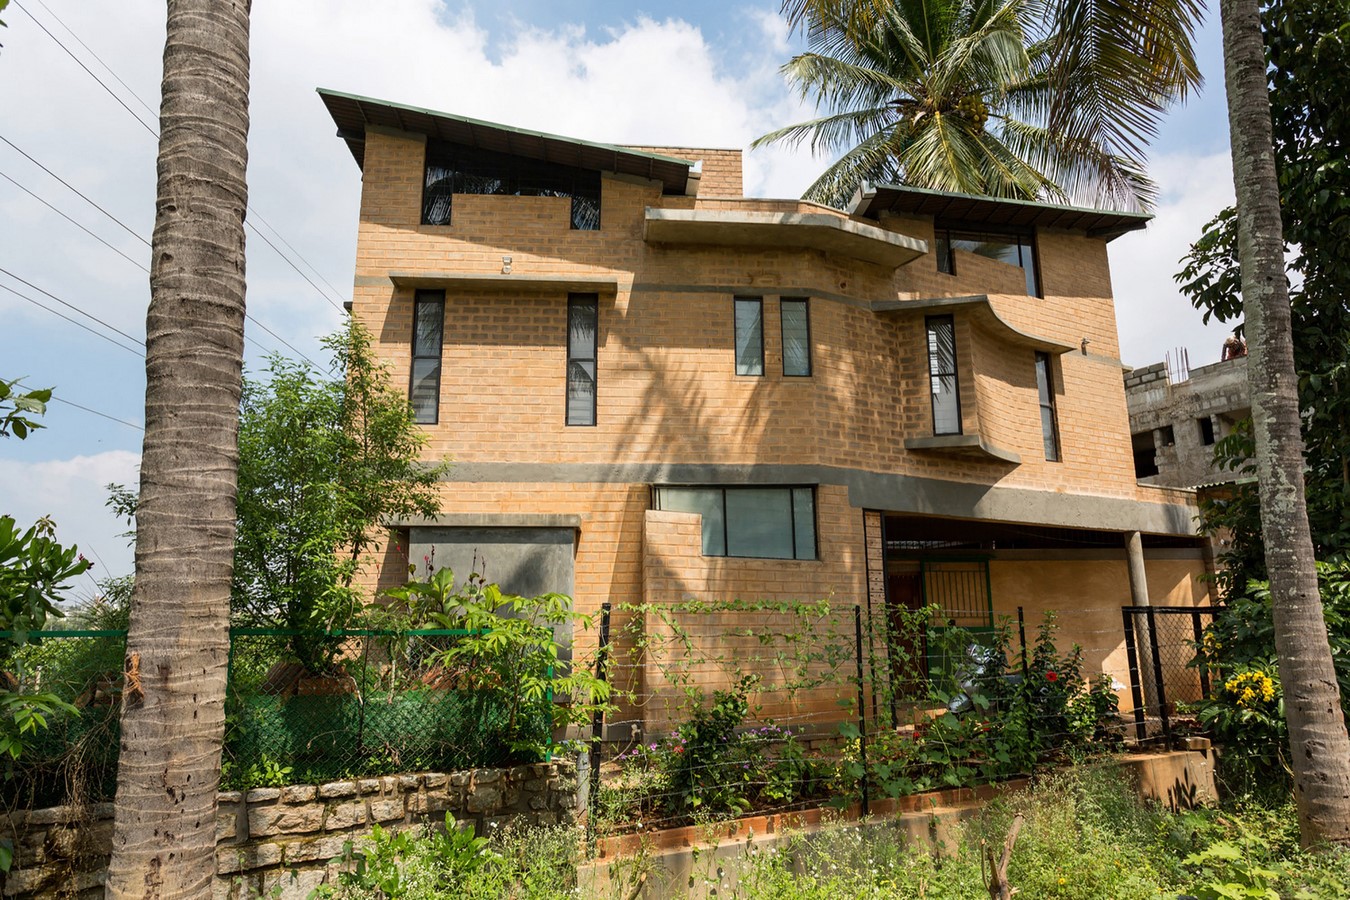 Residence for Charis by Chitra Vishwanath: Brick by Brick - Sheet1